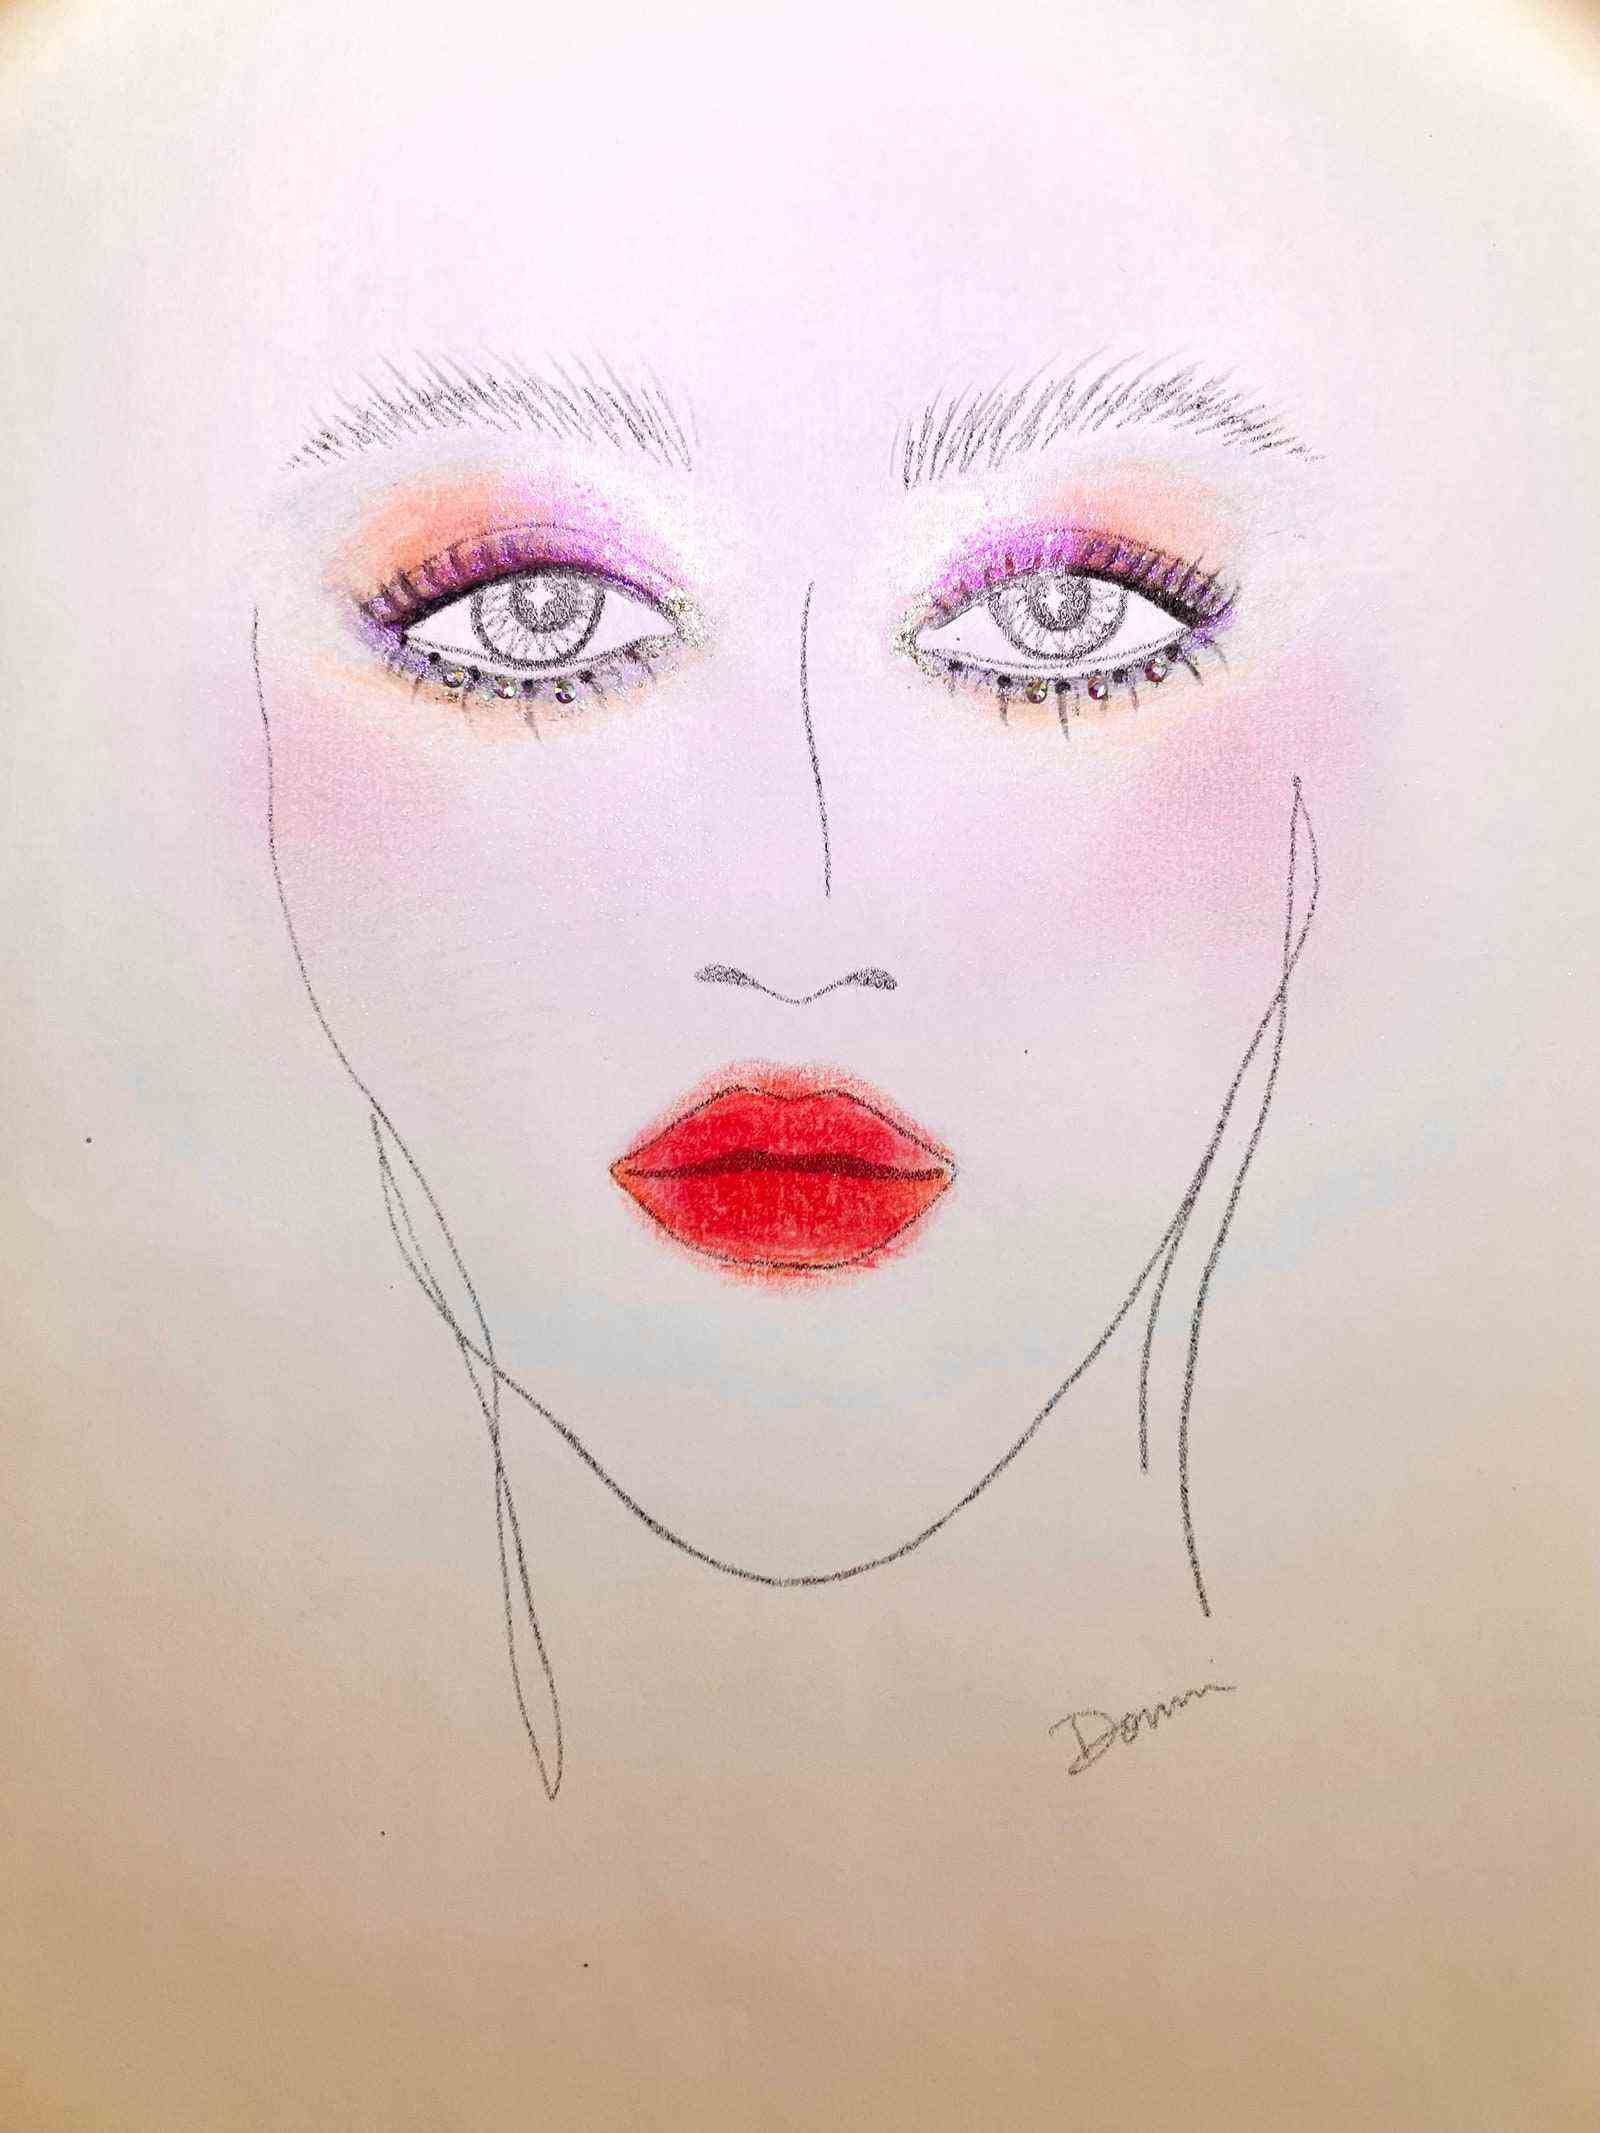 Gesichtsdiagramm des Gesichts mit rosa und orangefarbenem Lidschatten und Strasssteinen und rosarotem Lippenstift